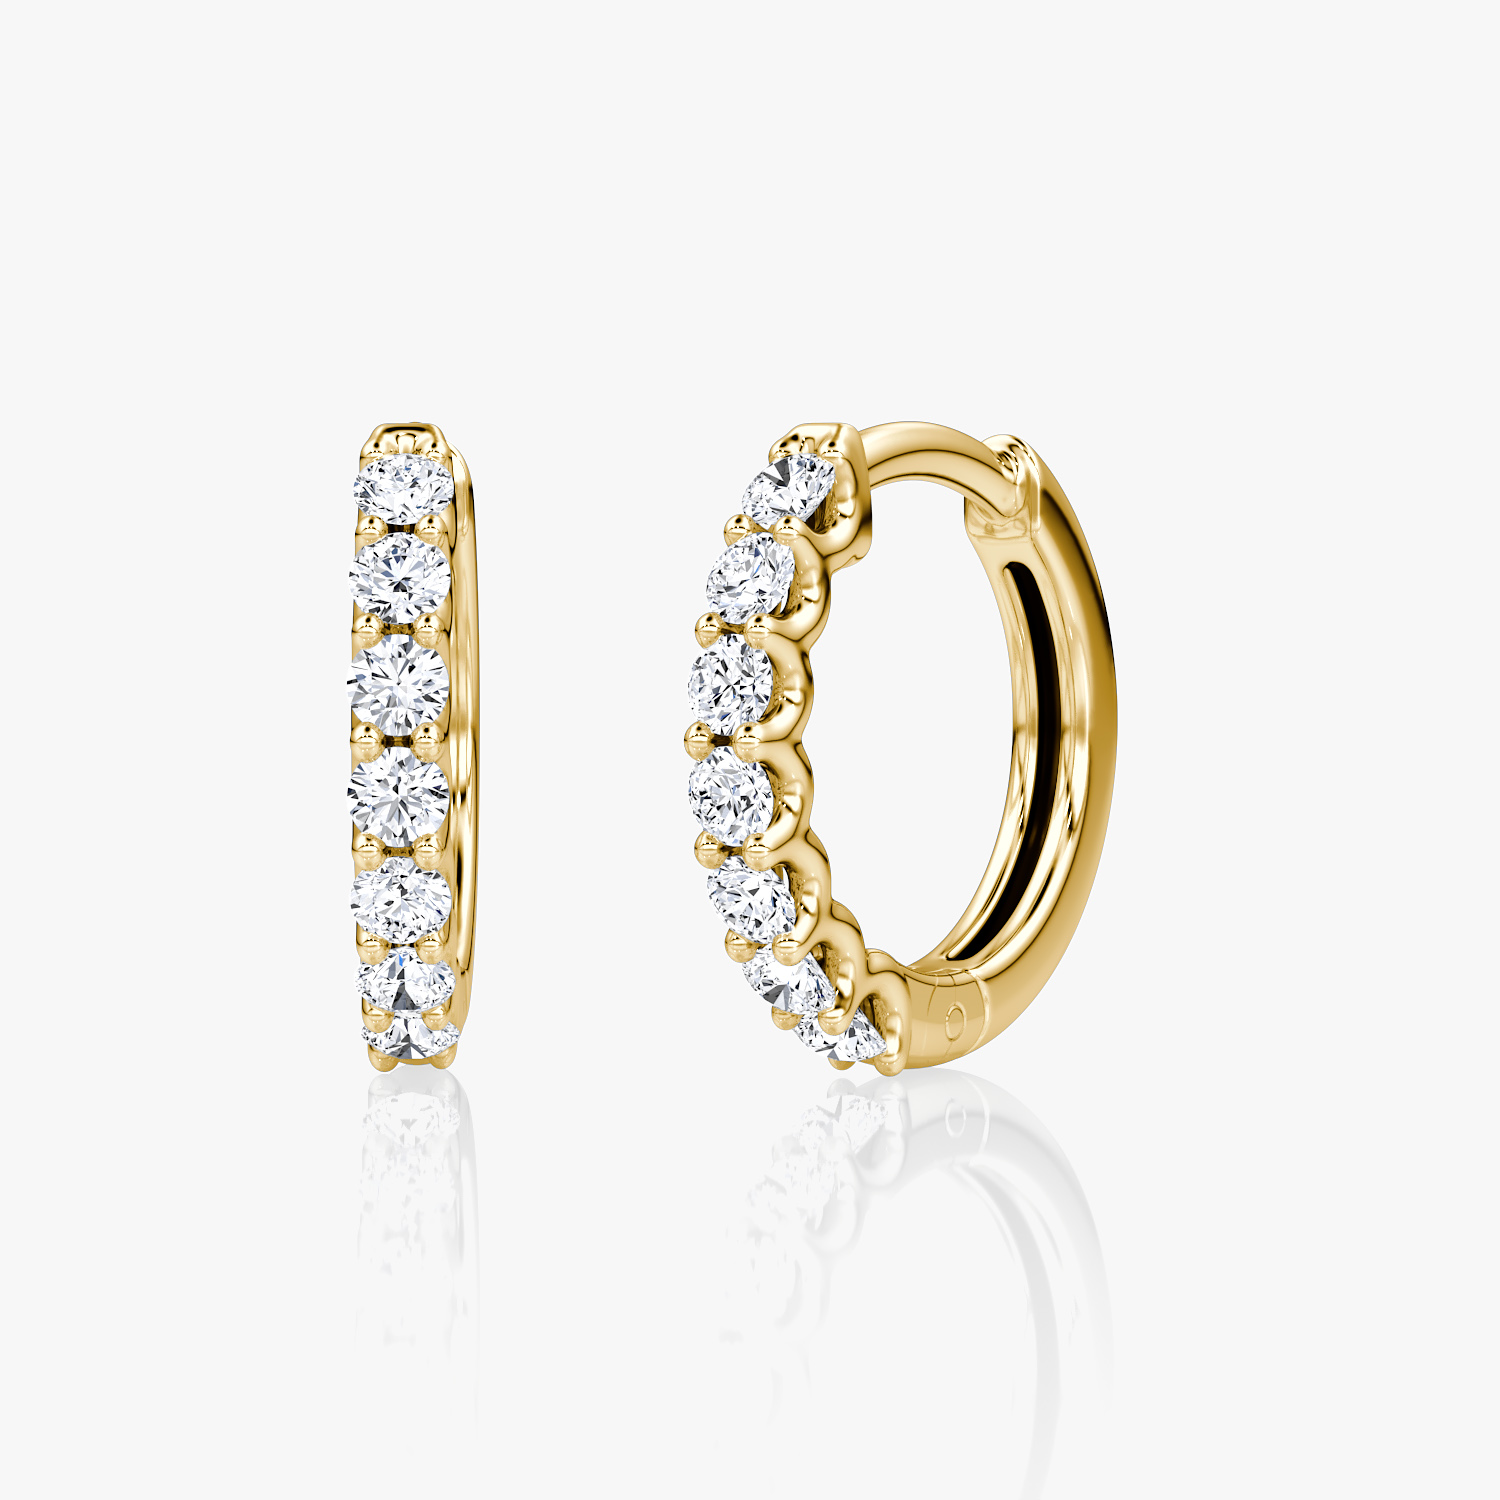 Latest Gold Hoop Earring Designs||Ear Piercing Ideas for Girls | Gold hoop earrings  style, Gold necklace designs, Gold earrings designs